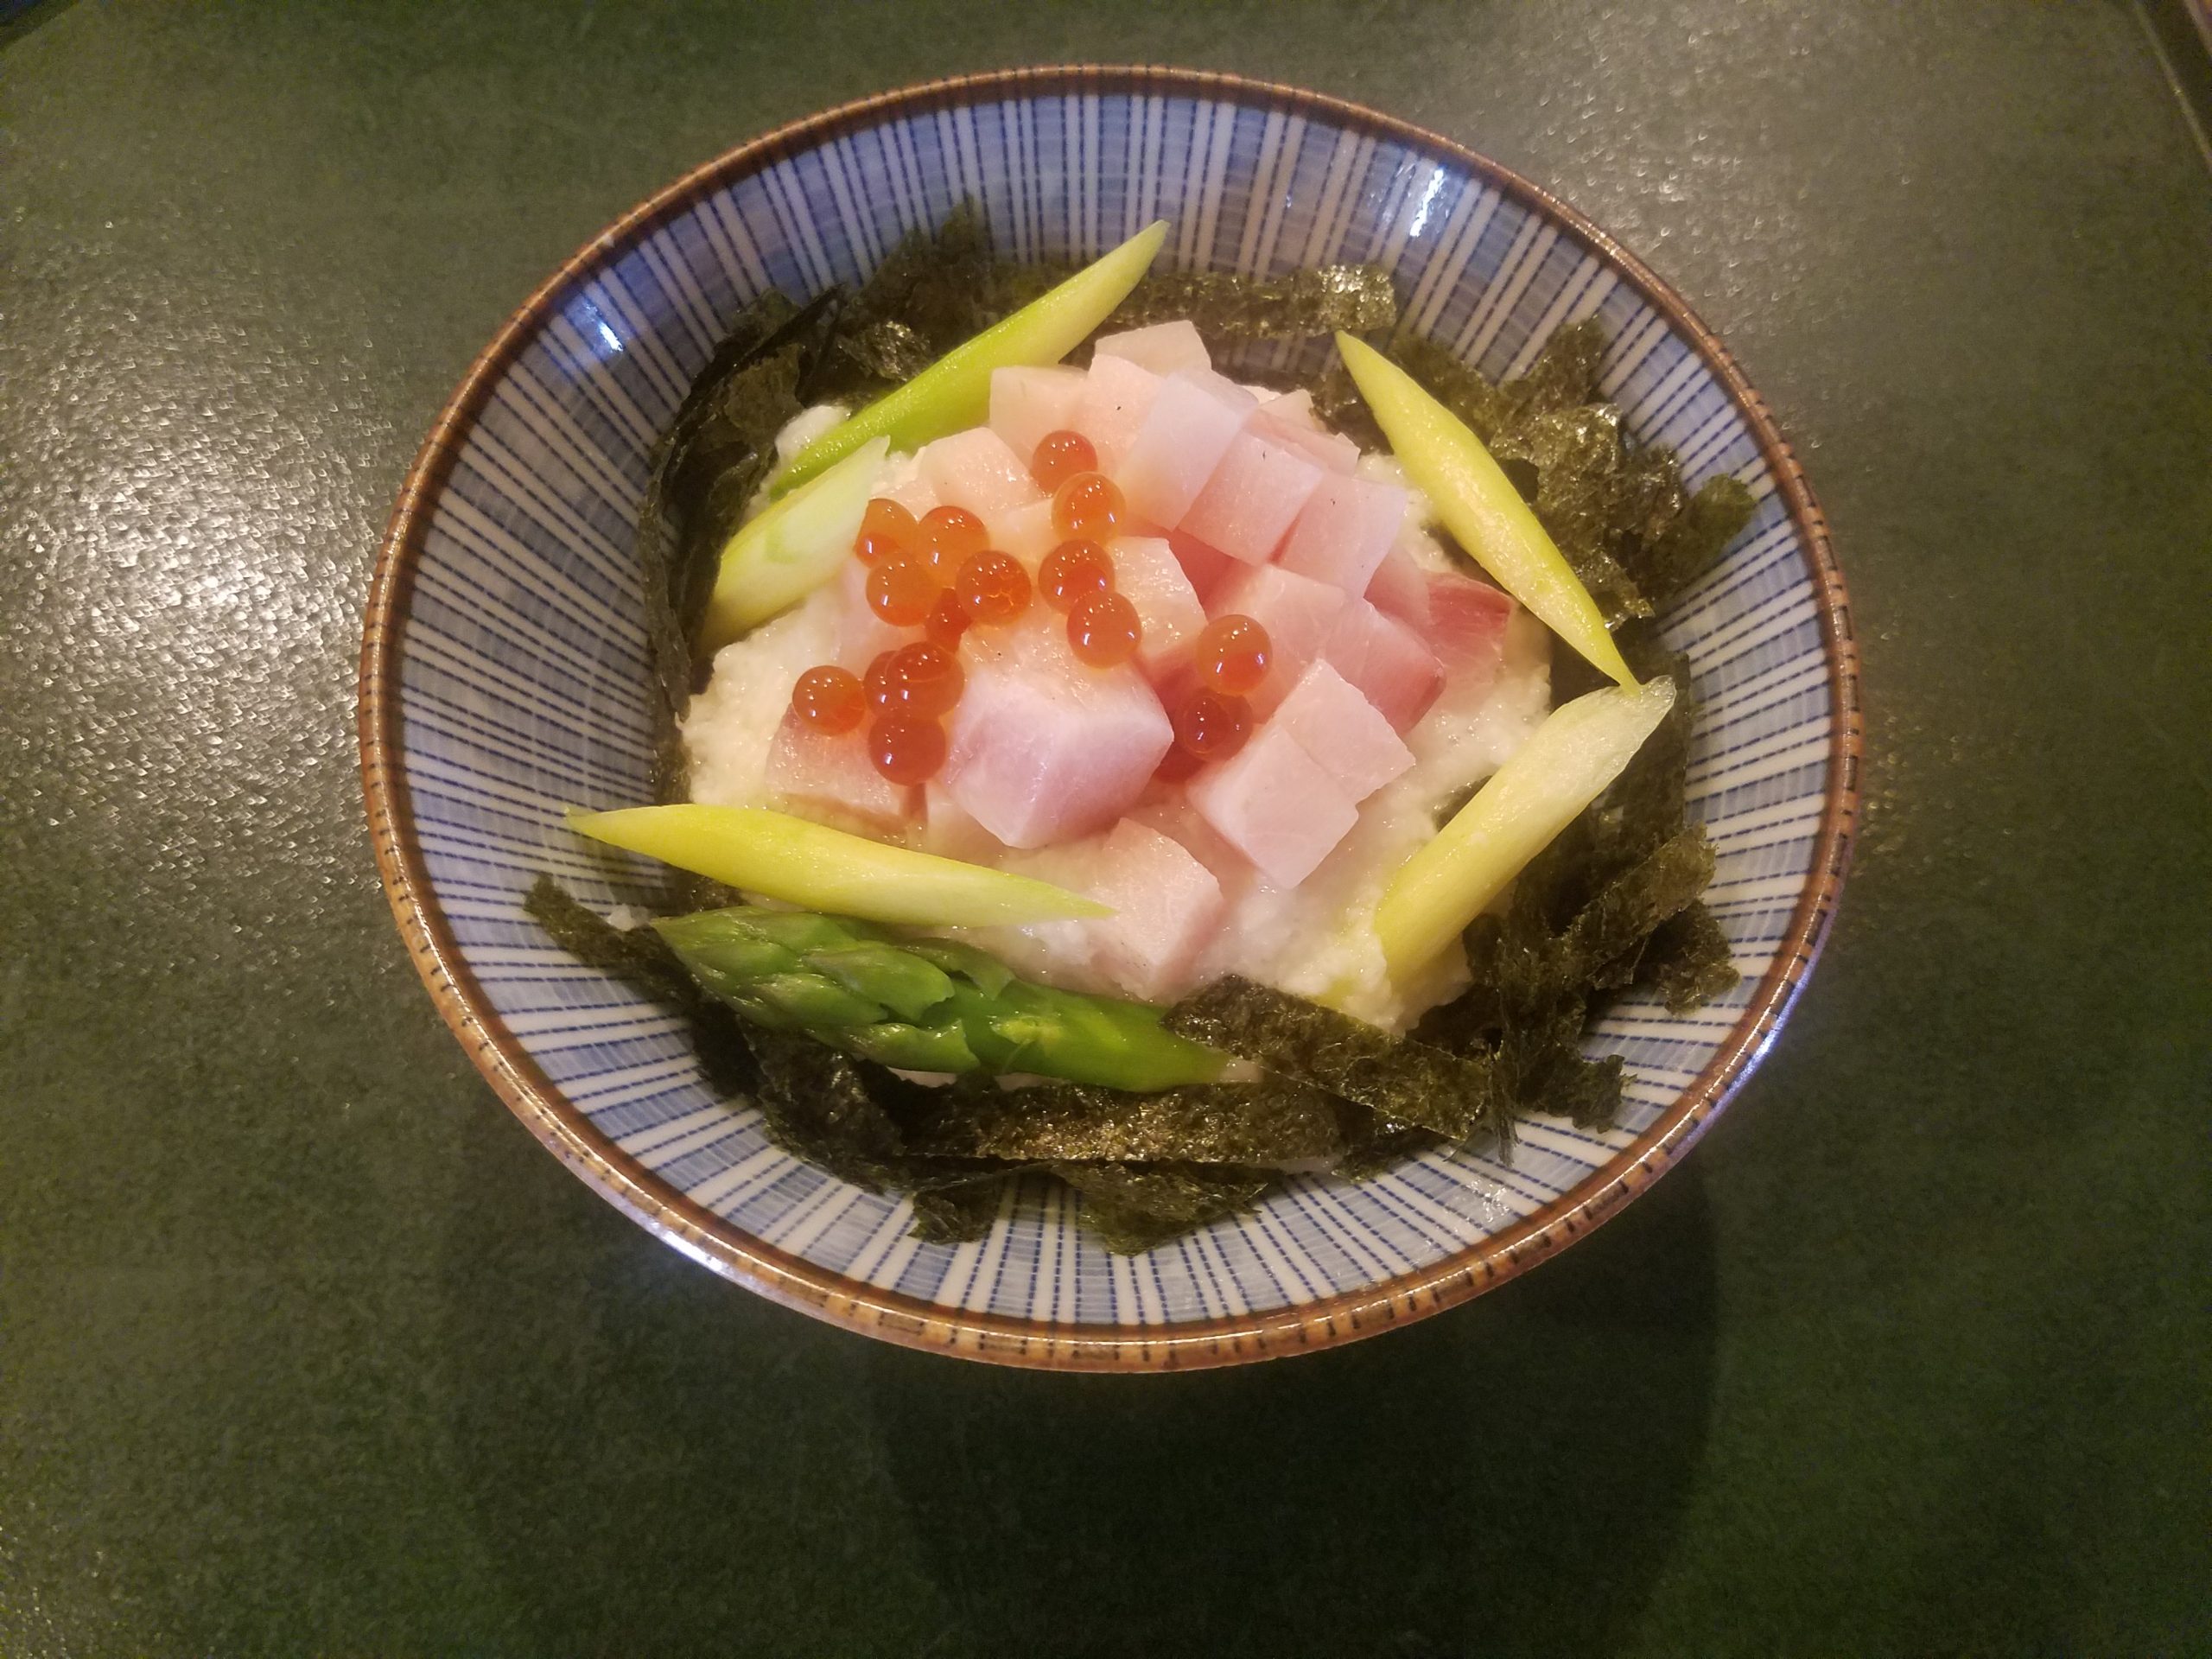 アスパラととろろマグロ丼 海の恵み 食の底力 Japan 公式レシピサイト